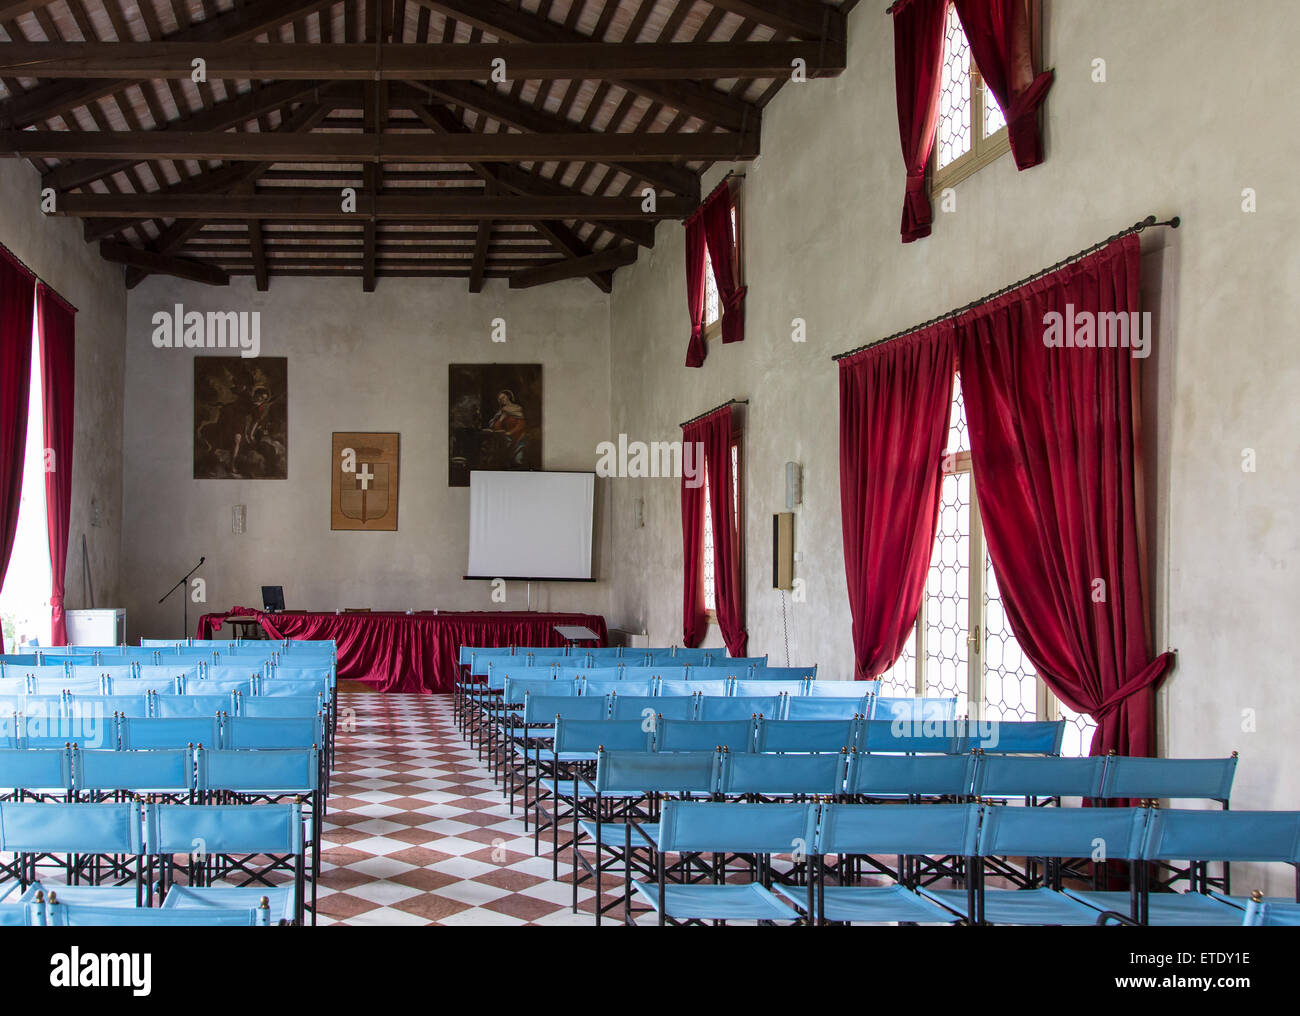 VICENZA, Italia - 13 de mayo: Sala de conferencia con lona sillas azules y cortinas rojas, en el interior de villa Cordellina Lombardi de Vicenza o Foto de stock